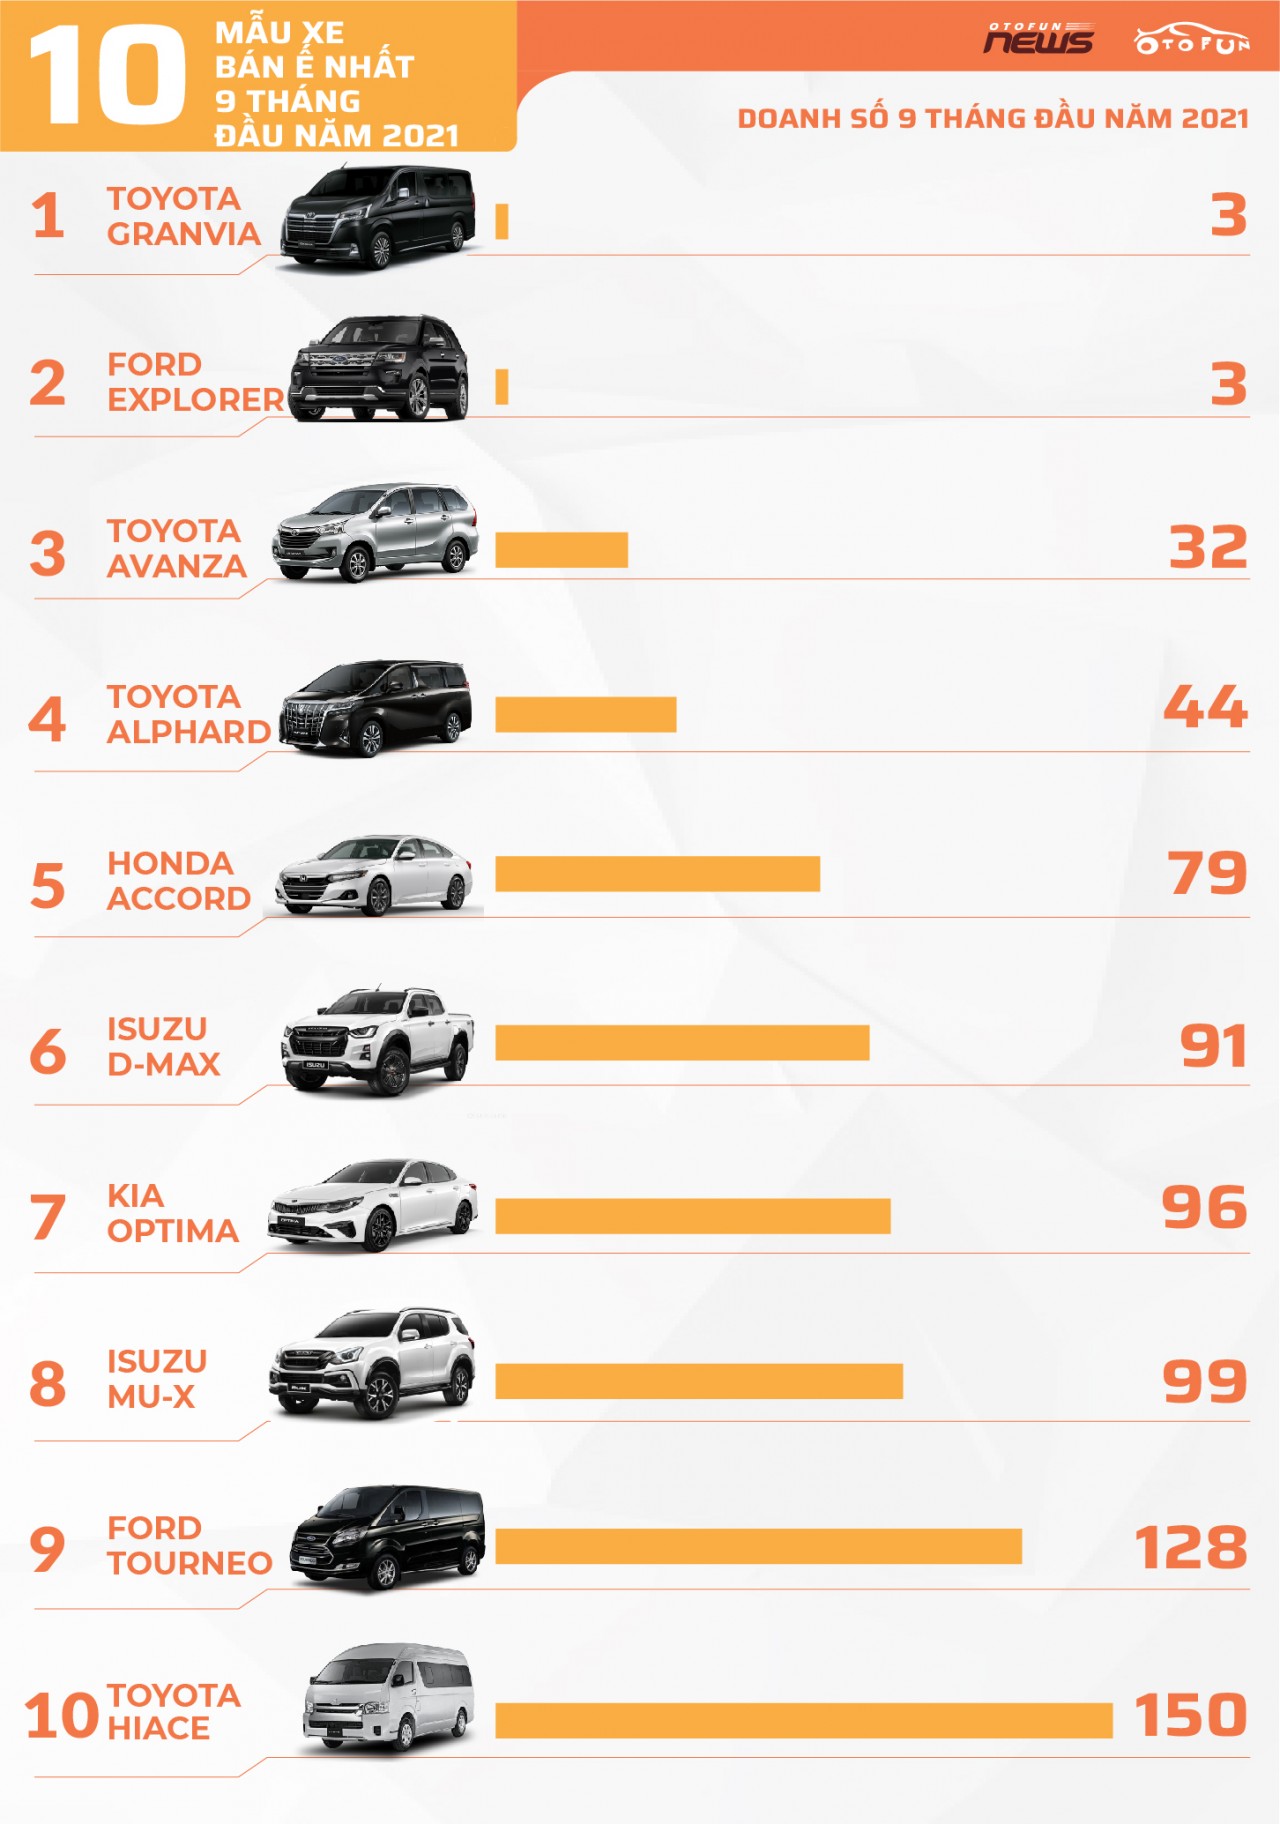 [Infographic] 10 xe bán chậm nhất 9 tháng đầu năm 2021